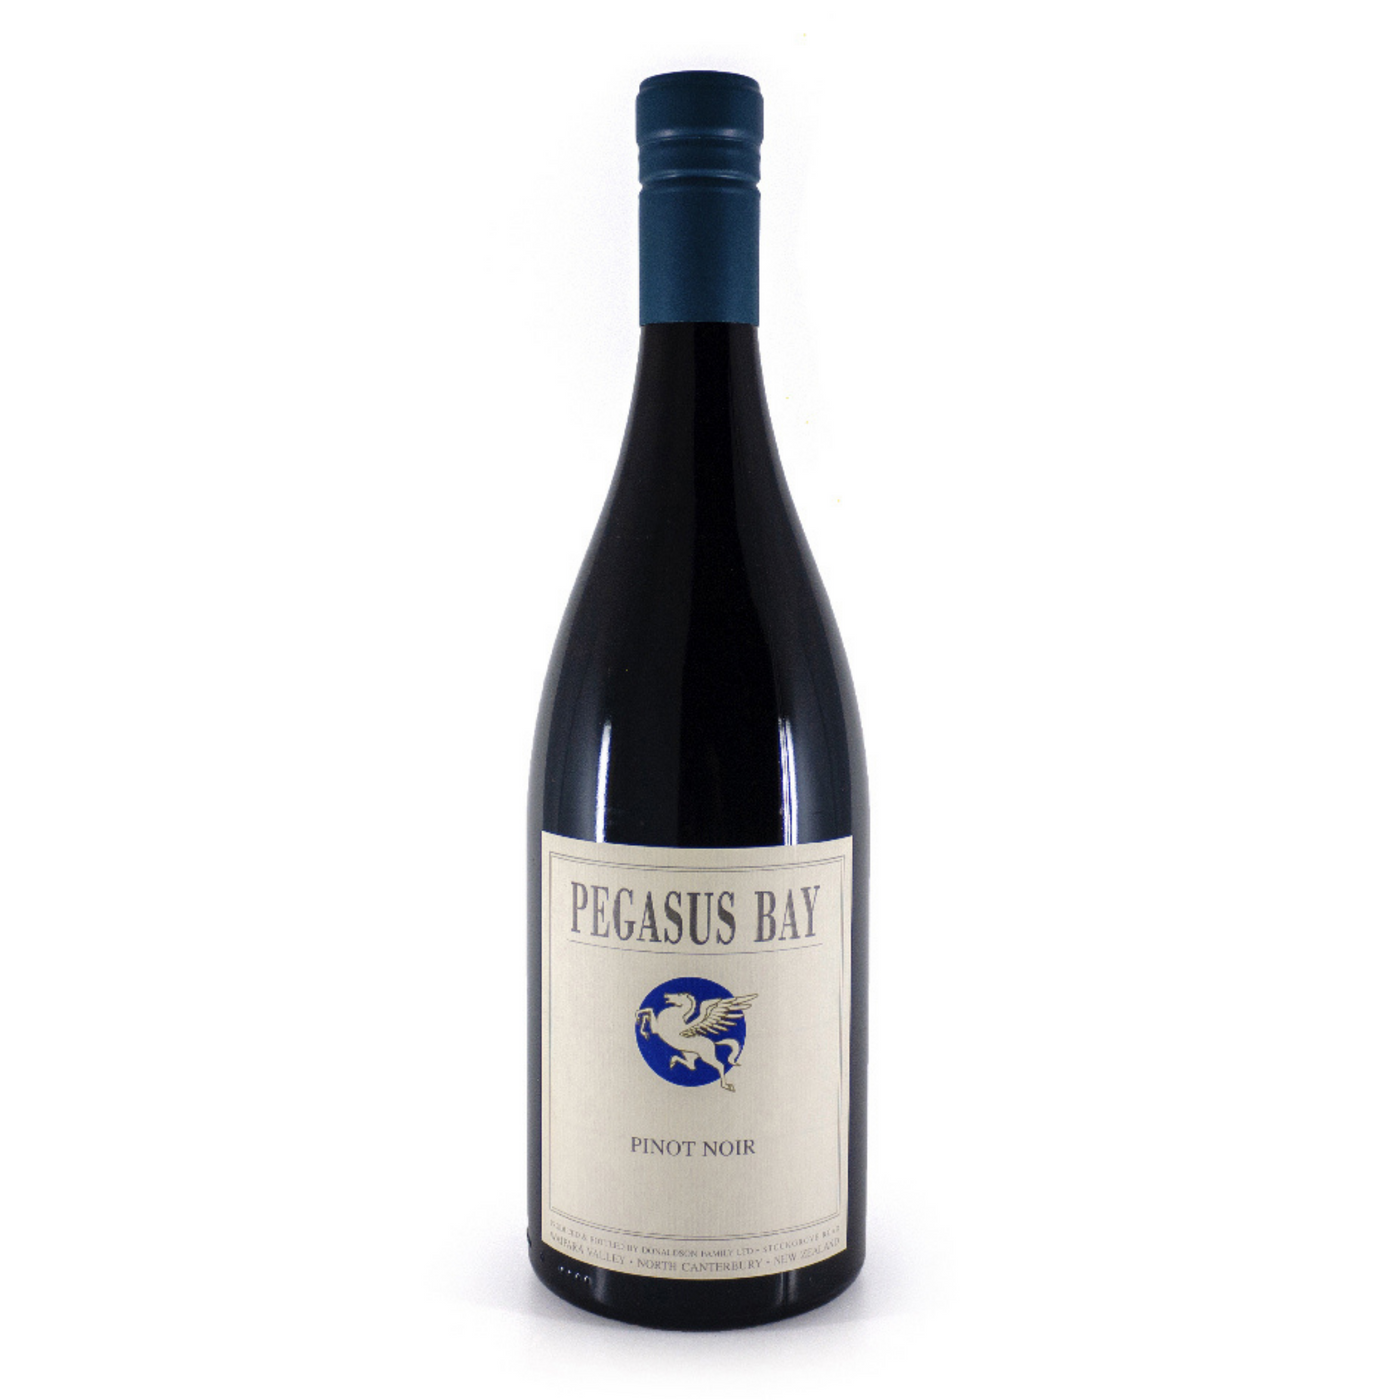 Pegasus Bay Pinot Noir 2018